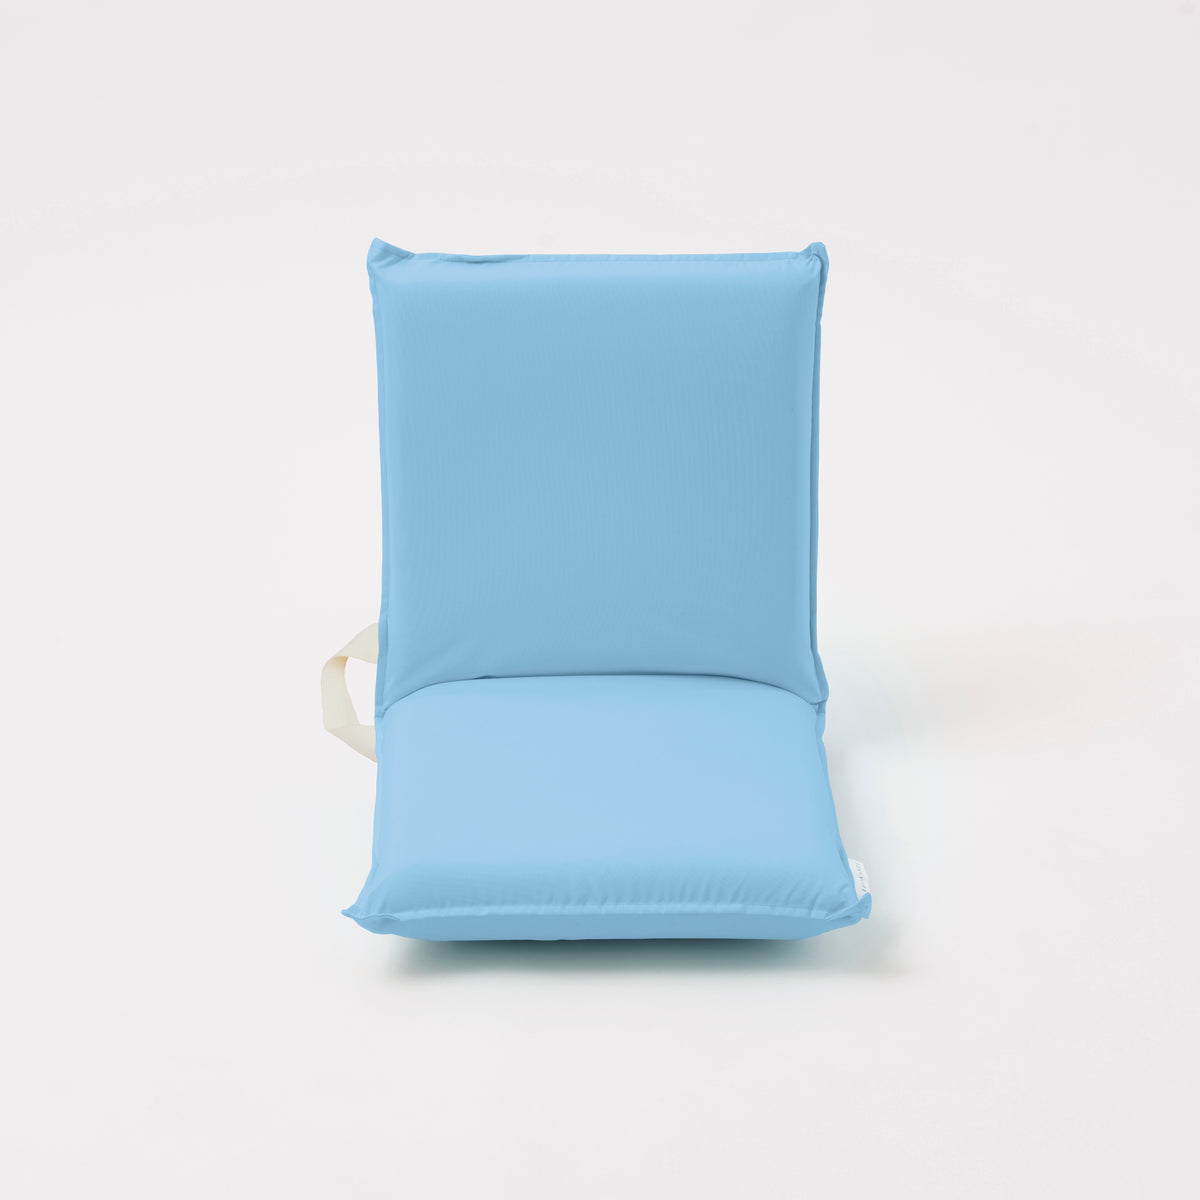 Folding Seat | Indigo